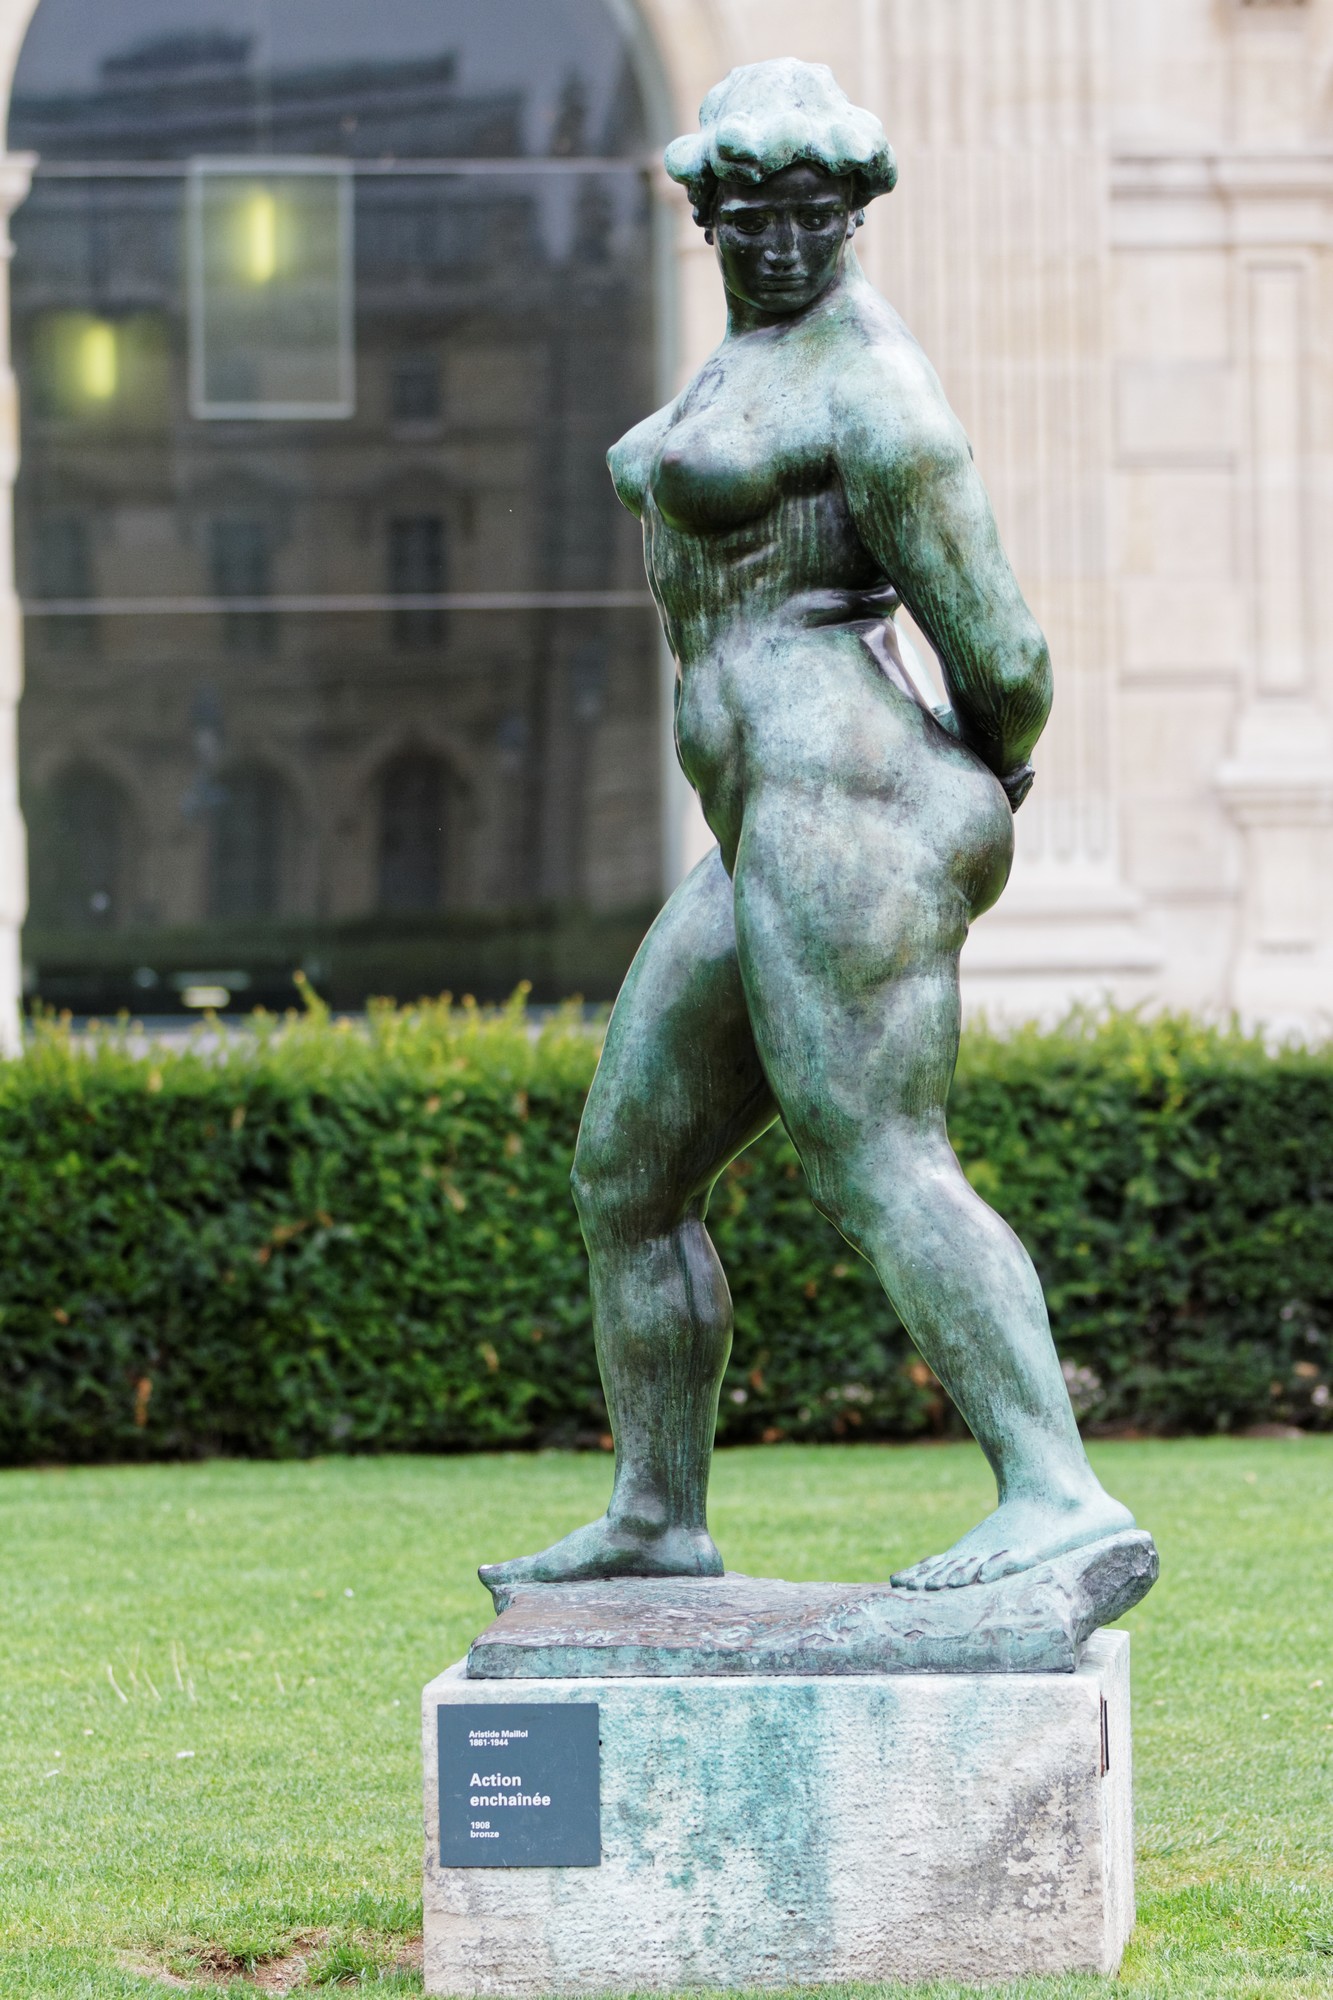 Aristide Maillol - Action enchaînée - Bronze - 1908 (Statue  installée dans le jardin des Tuileries à Paris)